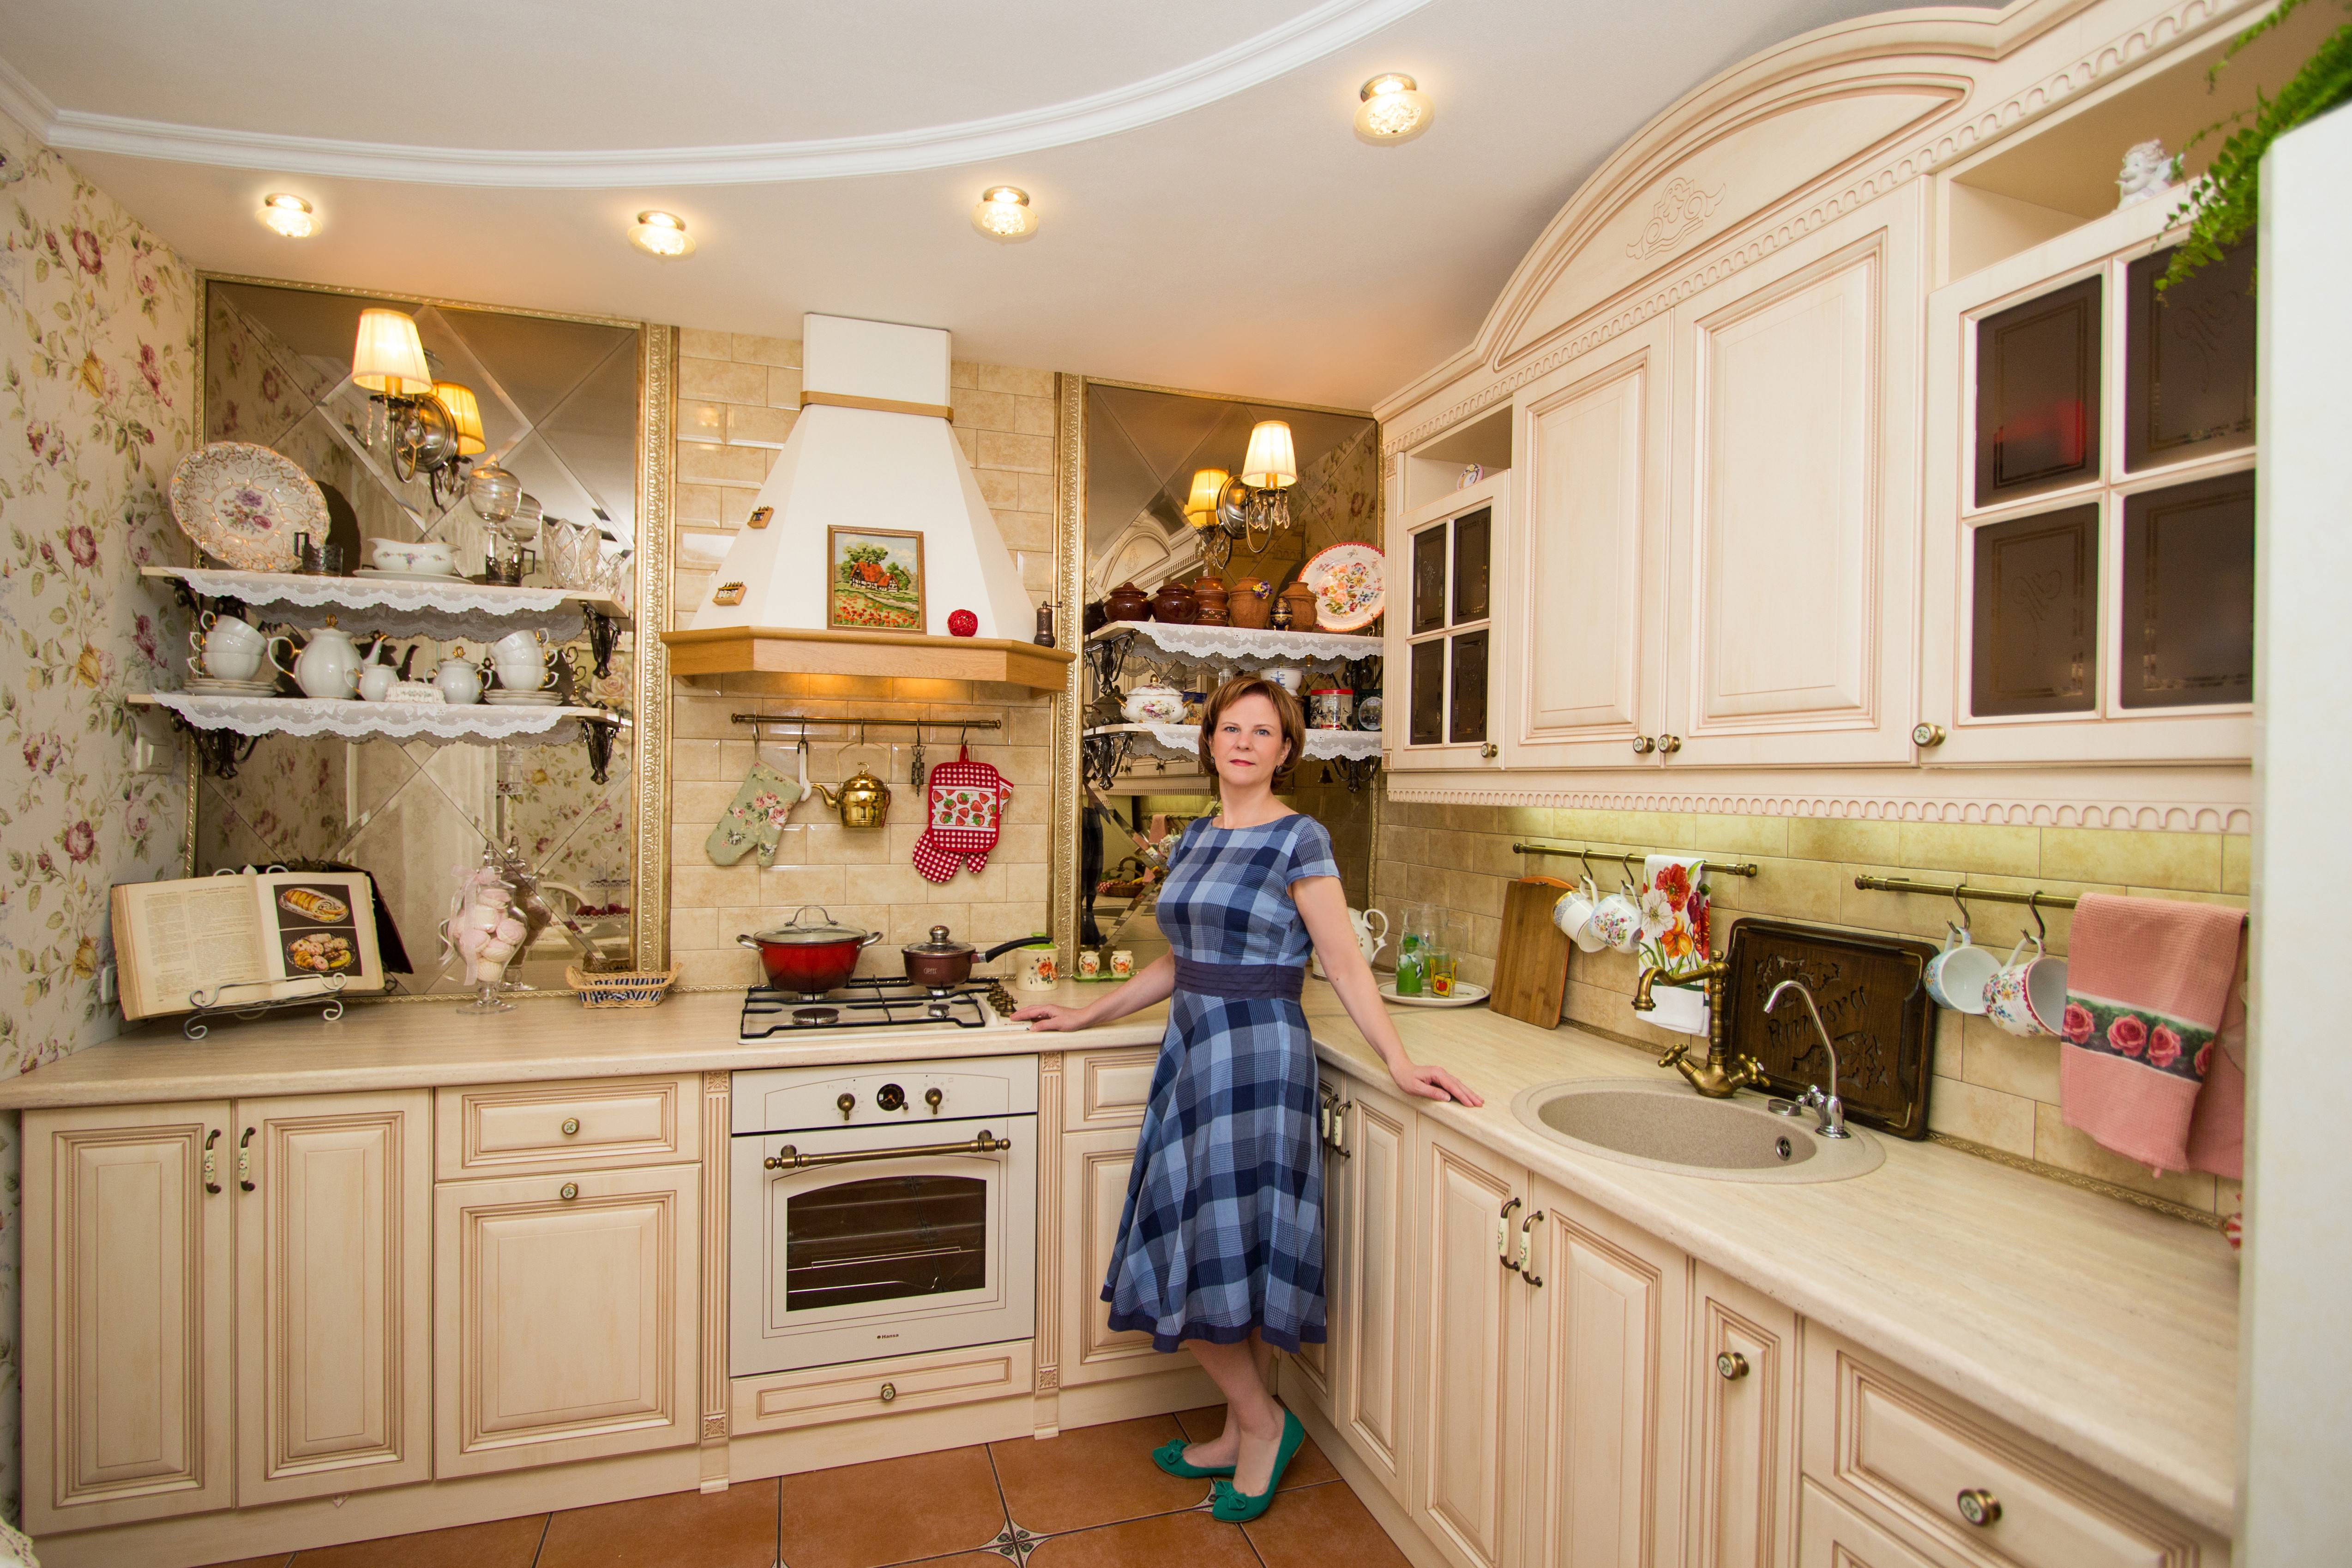 Семья беловых решила сделать ремонт на кухне